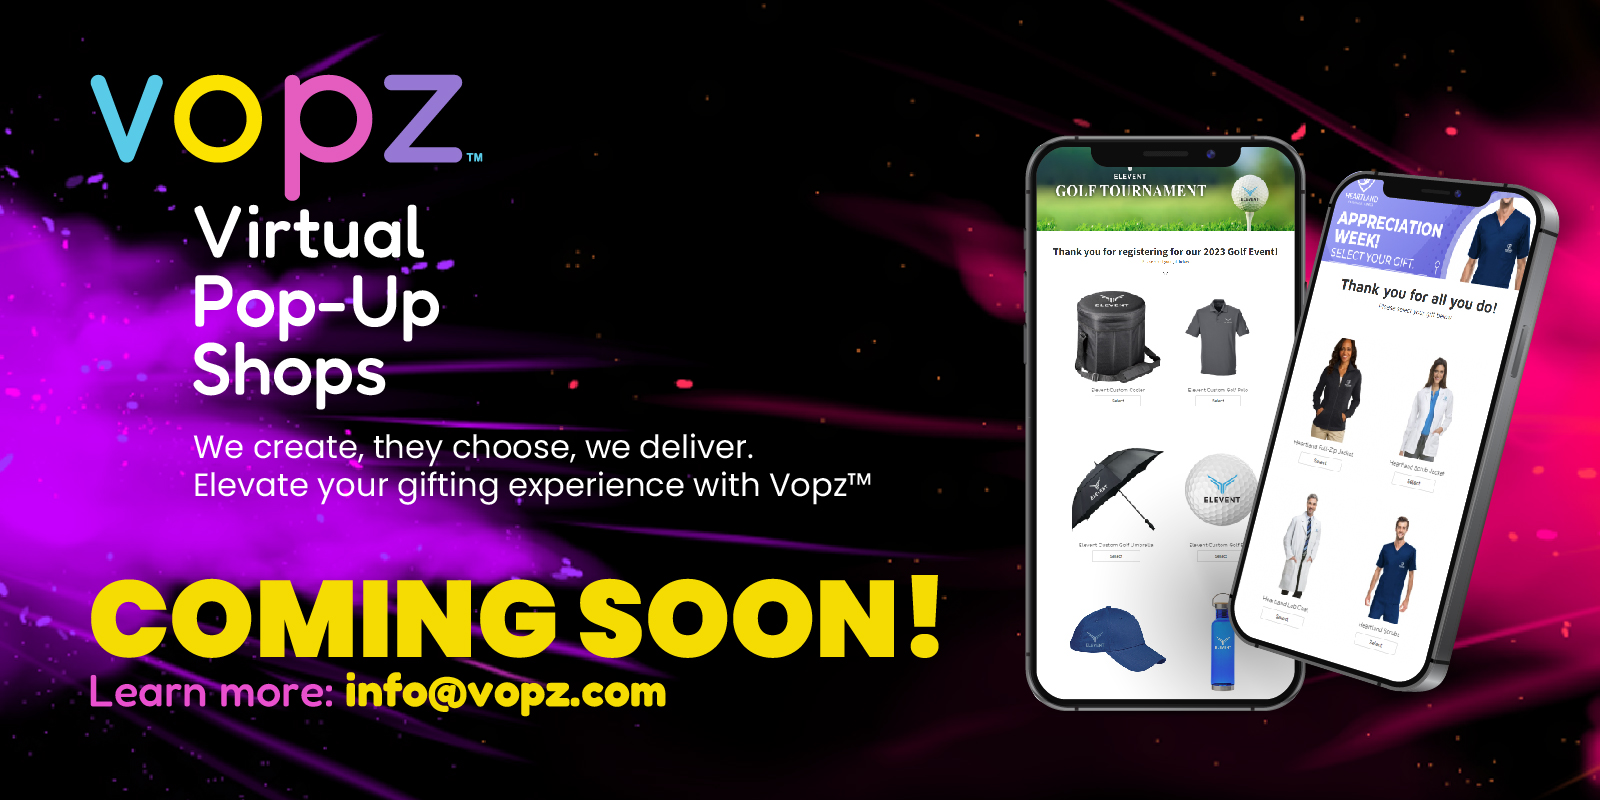 vopz - Virtual Pop-Up Shops